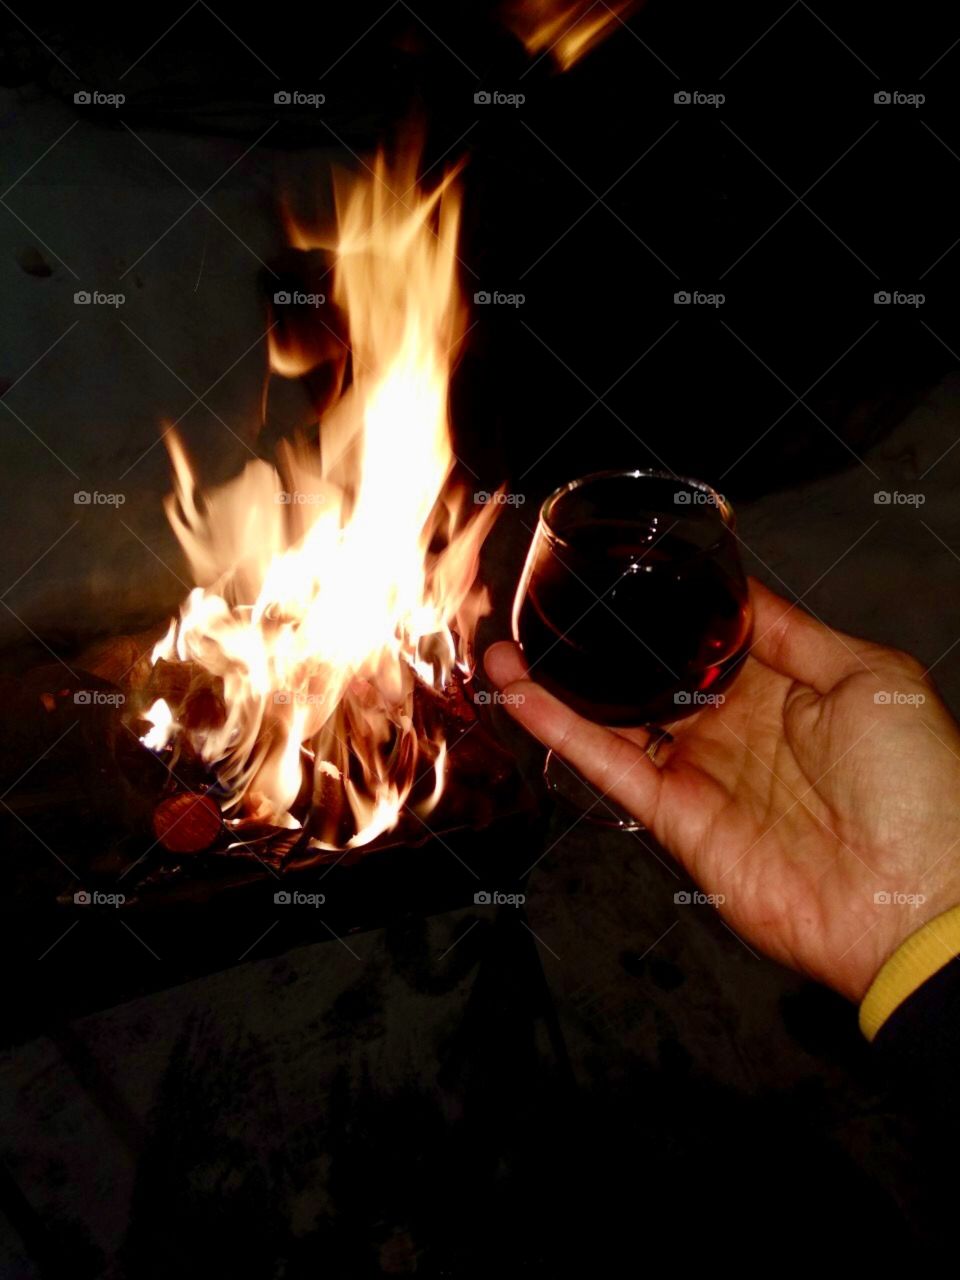 #виски#огонь#новый год#барбекю#шашлык#отдых#